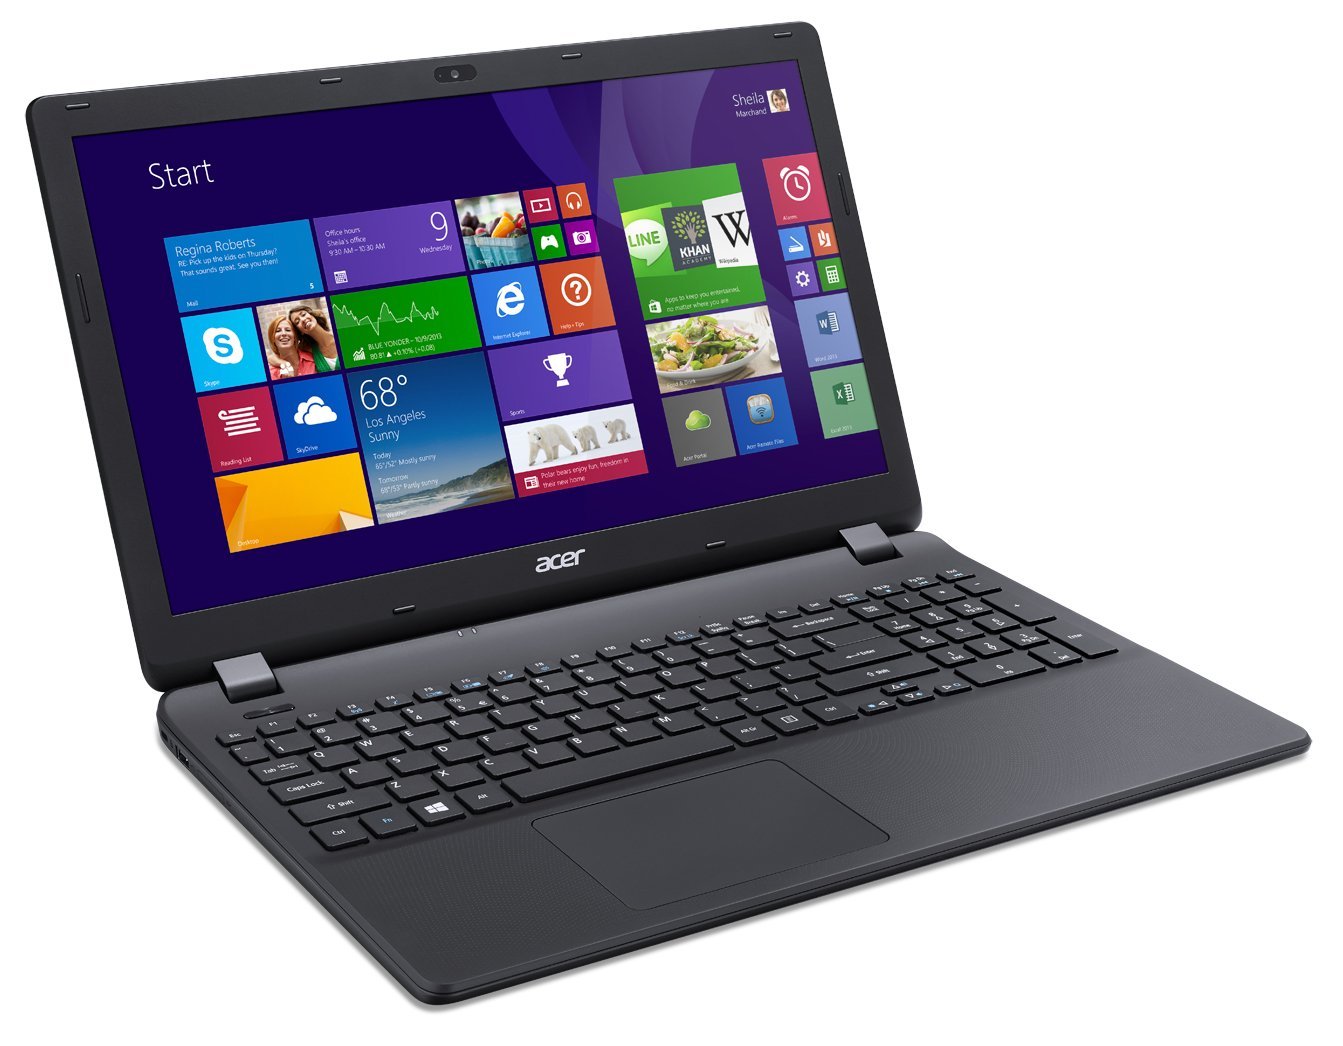 Acer Aspire ES1 411 N3540 kiểu dáng thanh mảnh ấn tượng trong dòng laptop giá rẻ